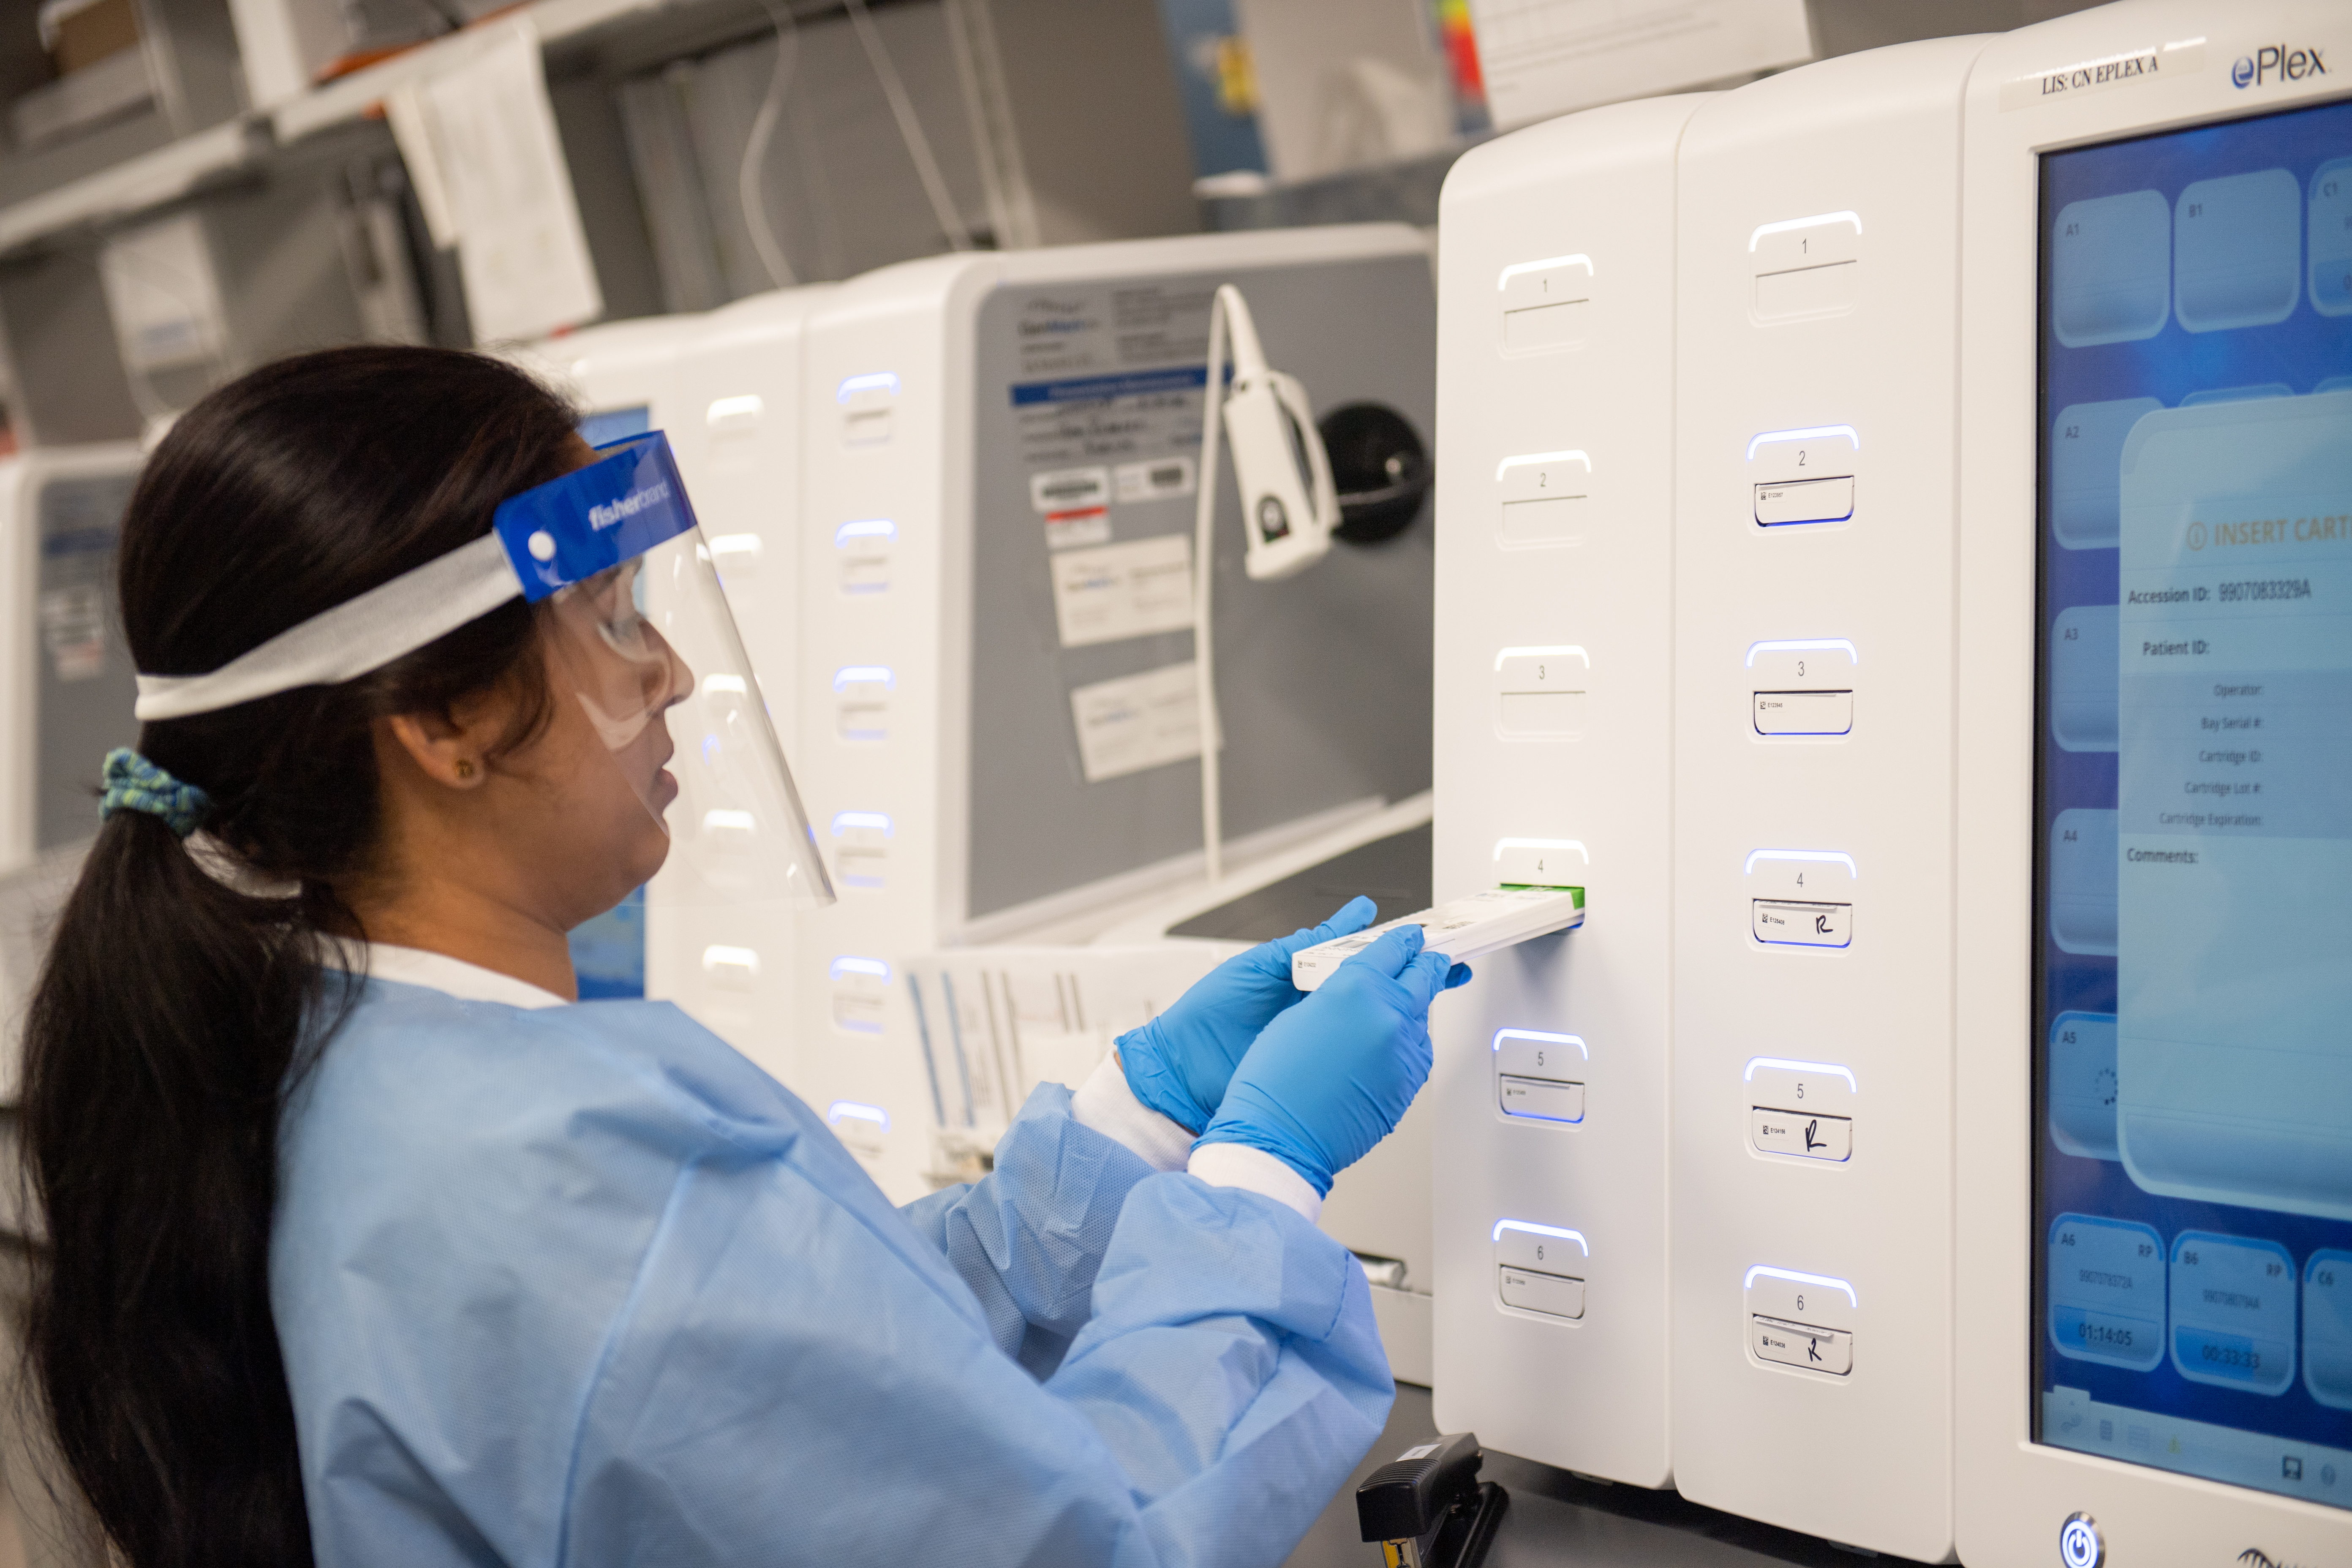 Long Island Laboratory To Start Semi-Automated Coronavirus Testing